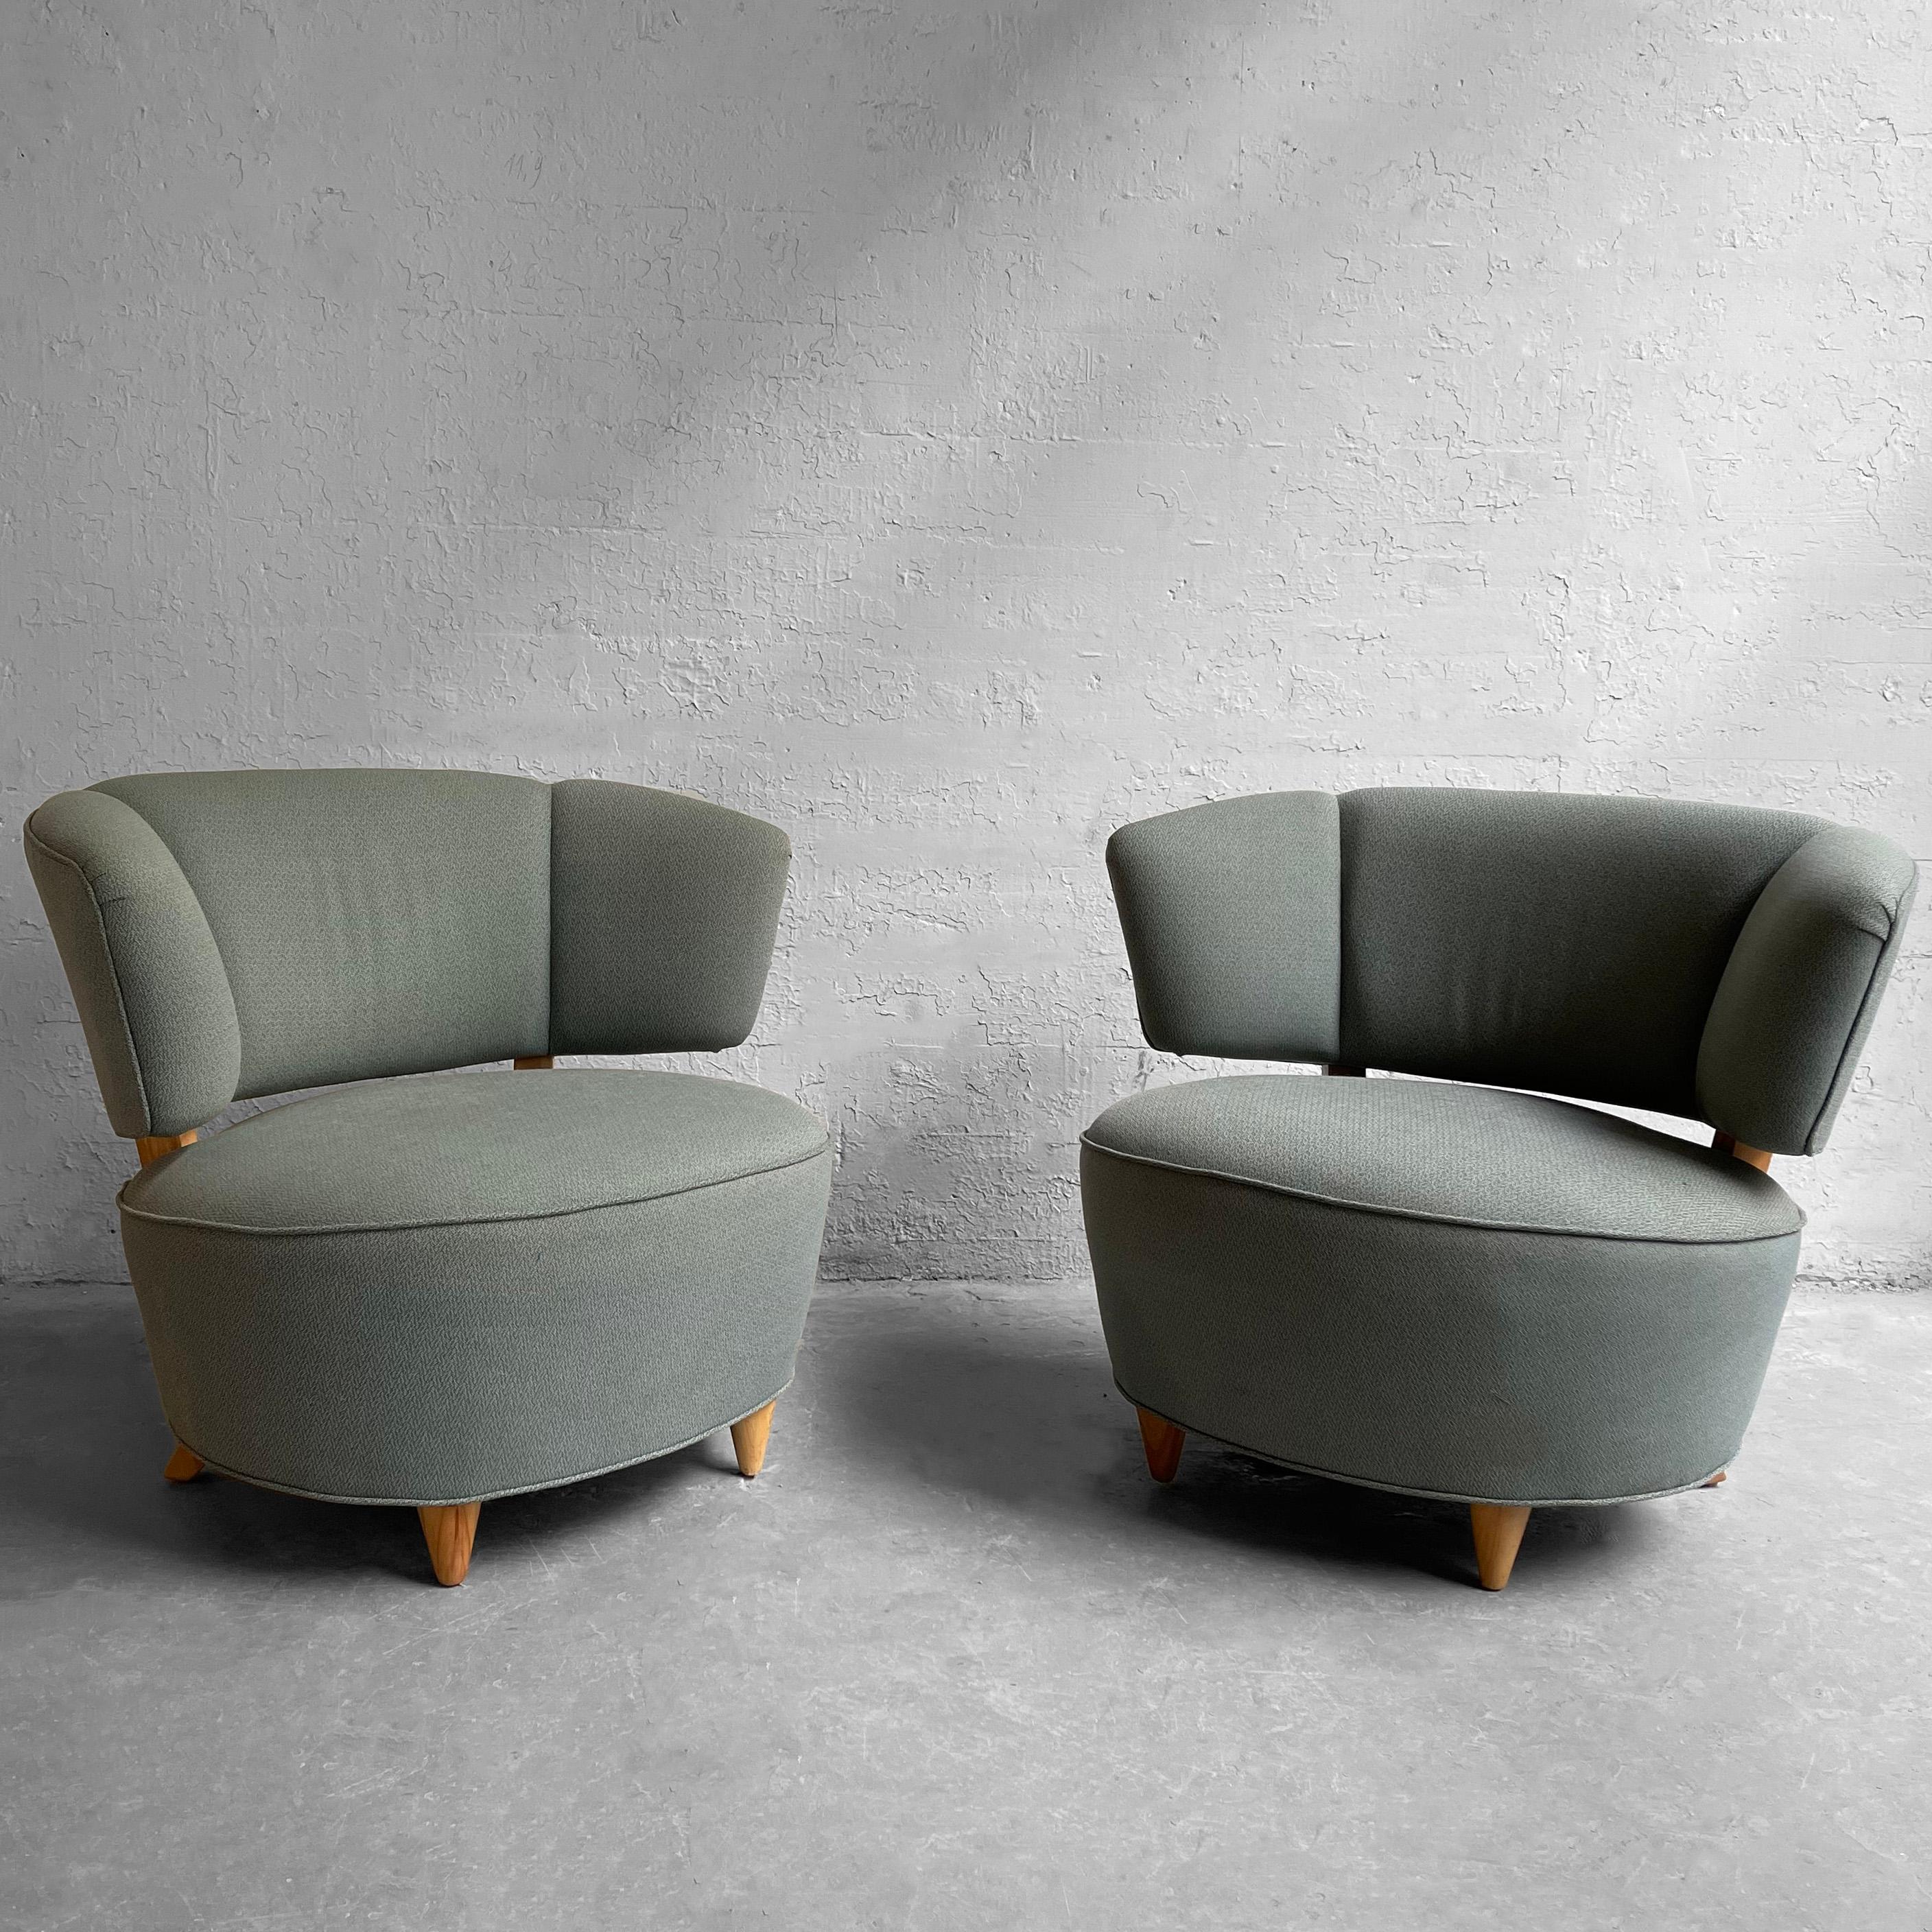 Merveilleuse paire de fauteuils art déco, slipper, lounge chairs par Gilbert Rohde pour Herman Miller, avec un profil arrondi et une assise et un dossier tapissés dans un mélange de lin bleu tissé.